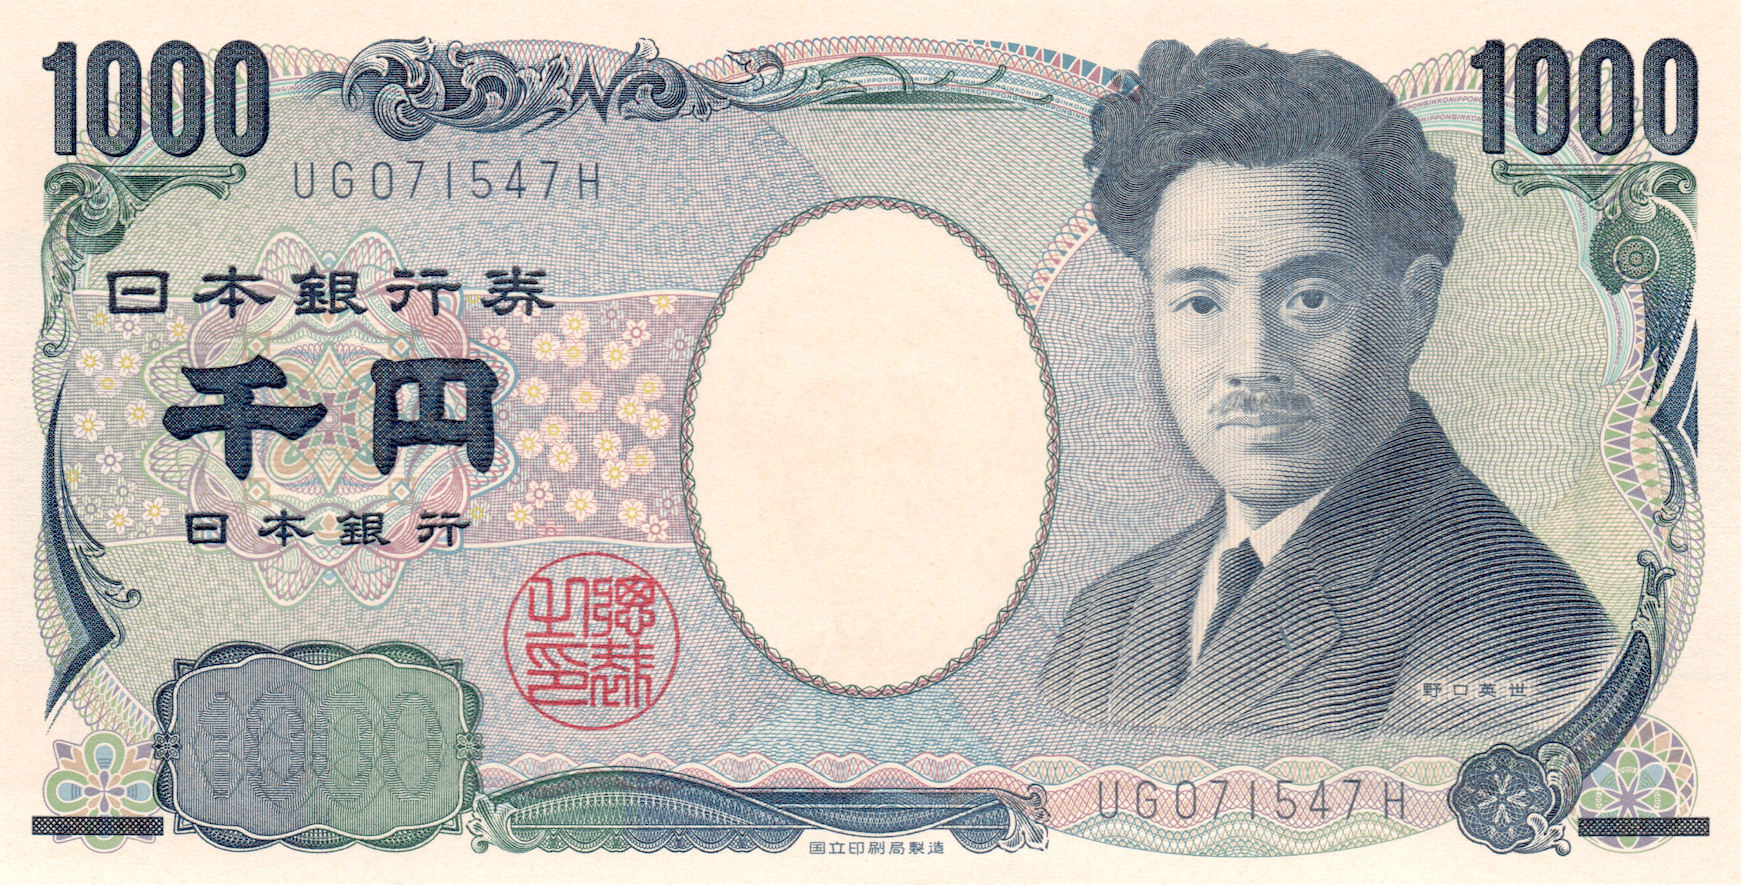 Ένα χαρτονόμισμα των 1000 γιεν Ιαπωνίας (7,74 $ ΗΠΑ). Φωτογραφία από τους Nepali Times. Χρησιμοποιείται με άδεια.